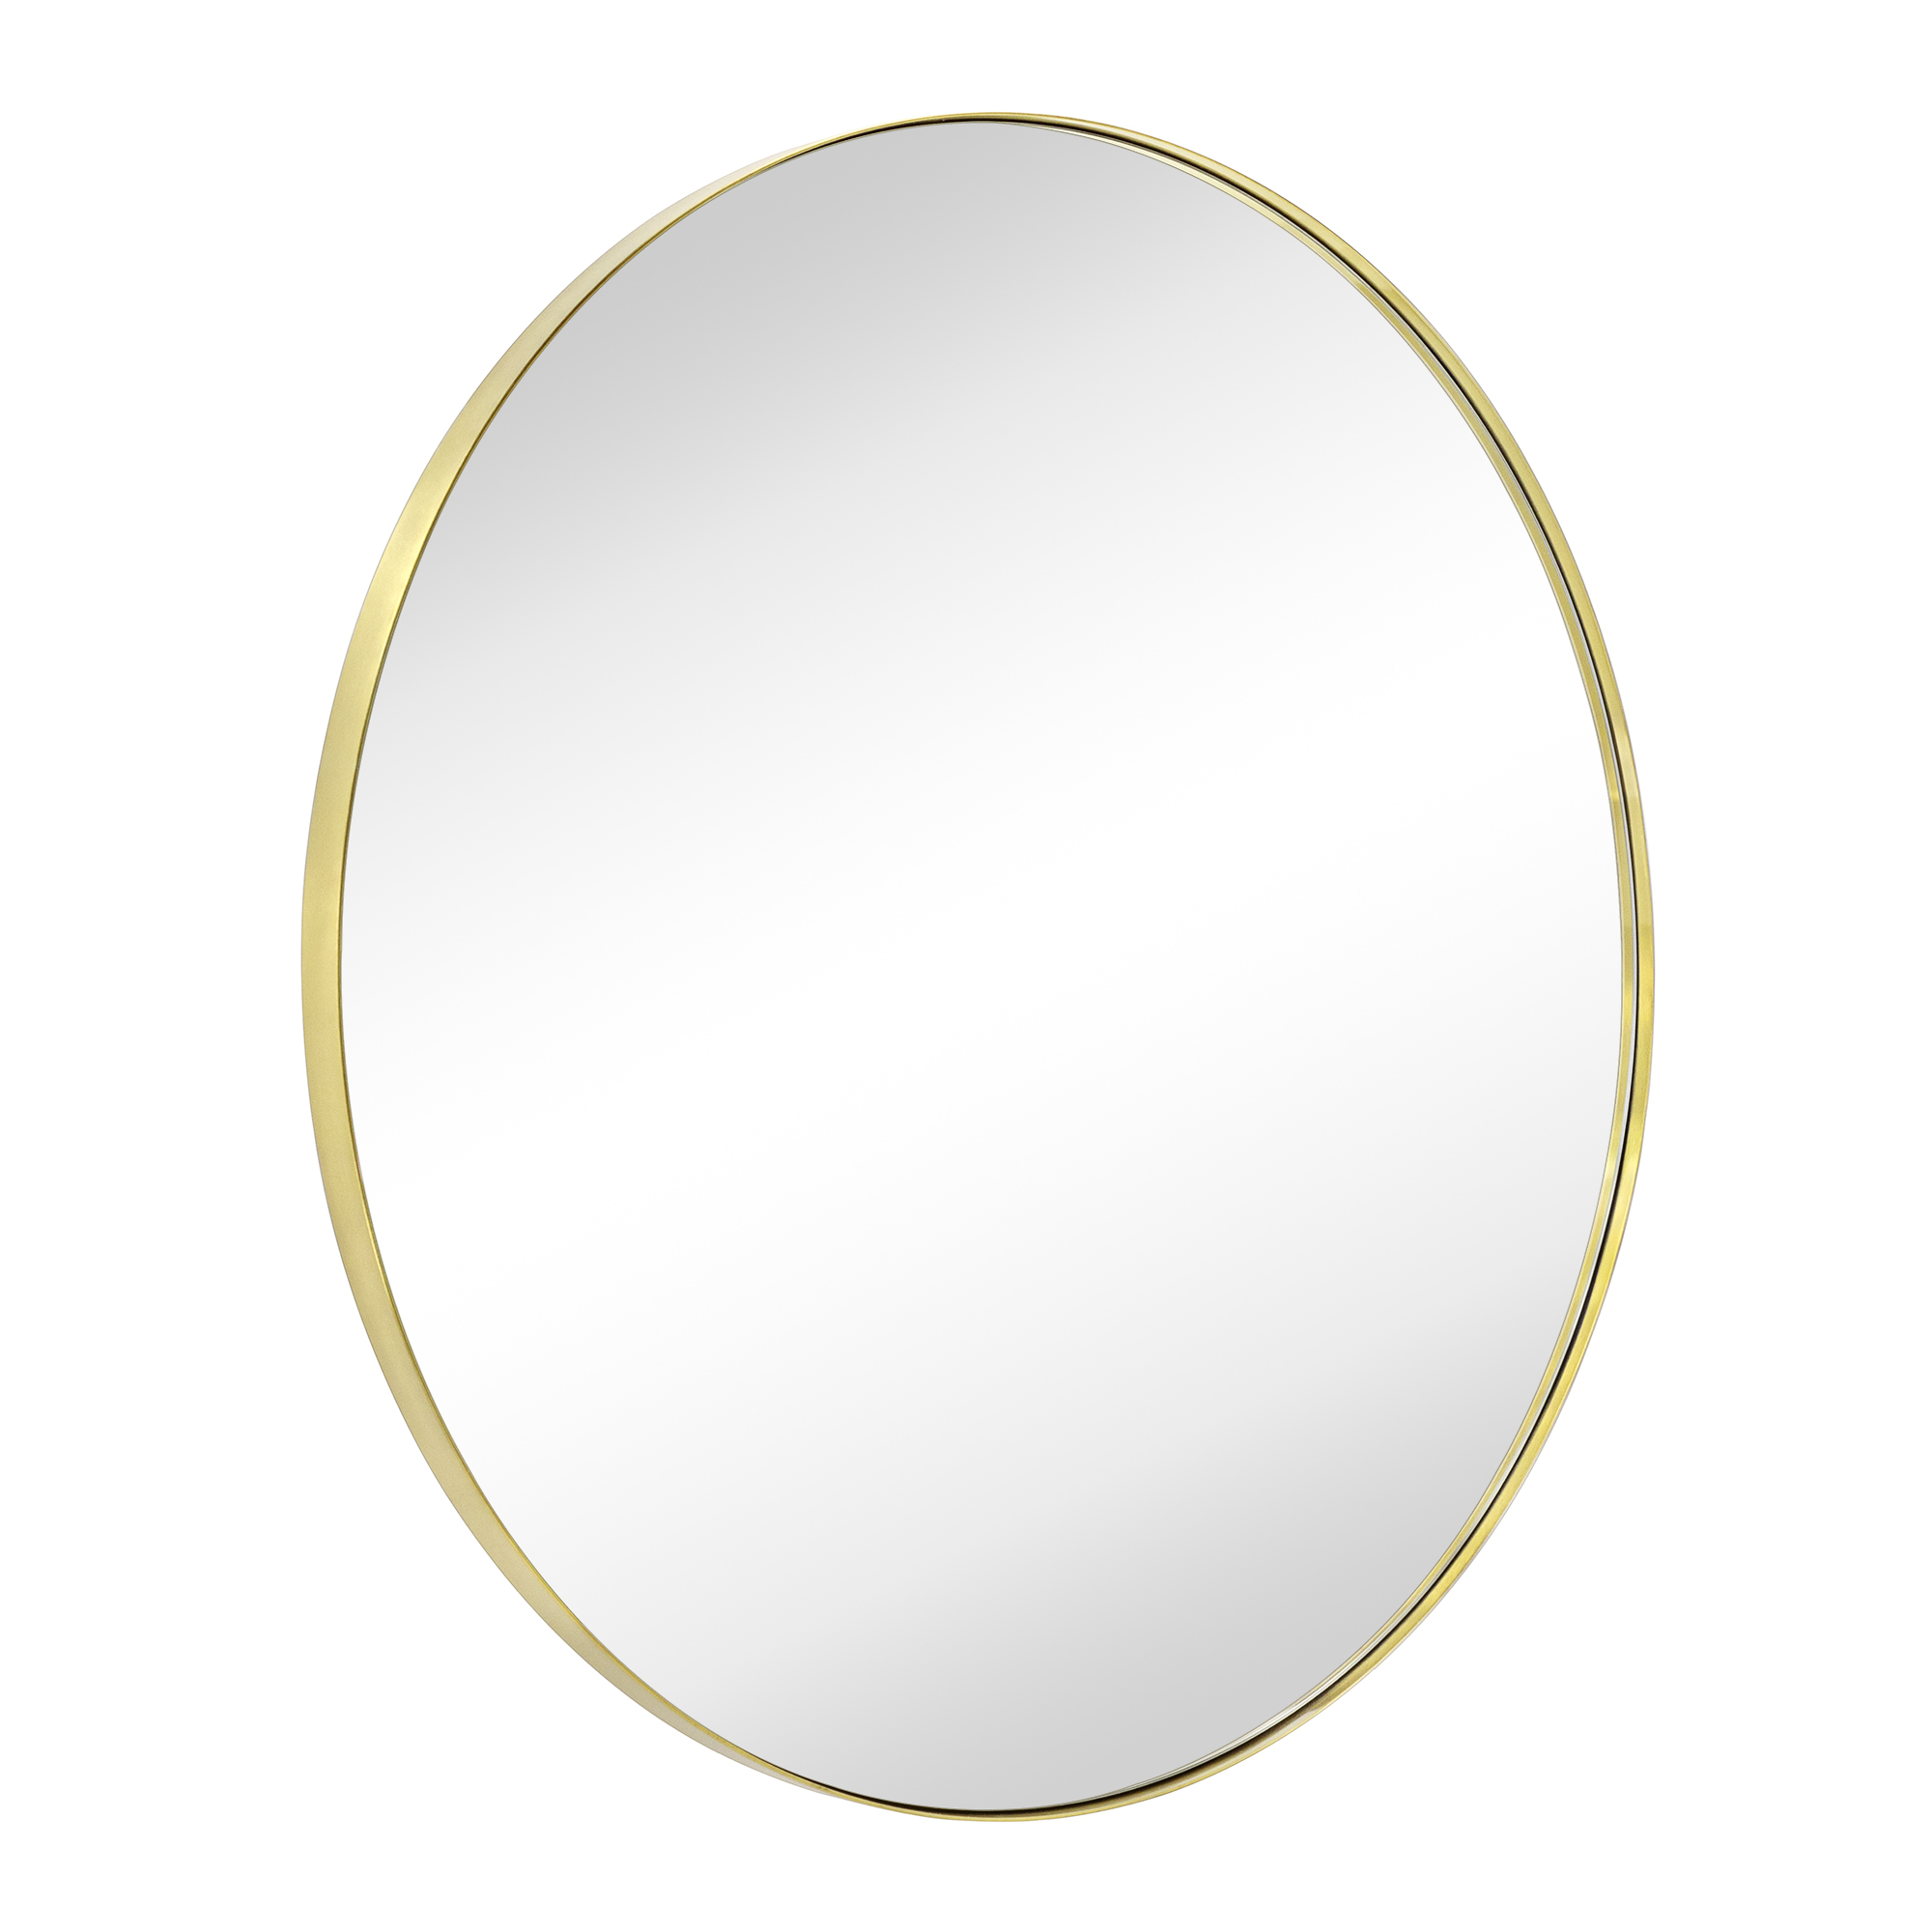 Yolanta Round Metal Wall Mirror-30x30-Brushed Gold